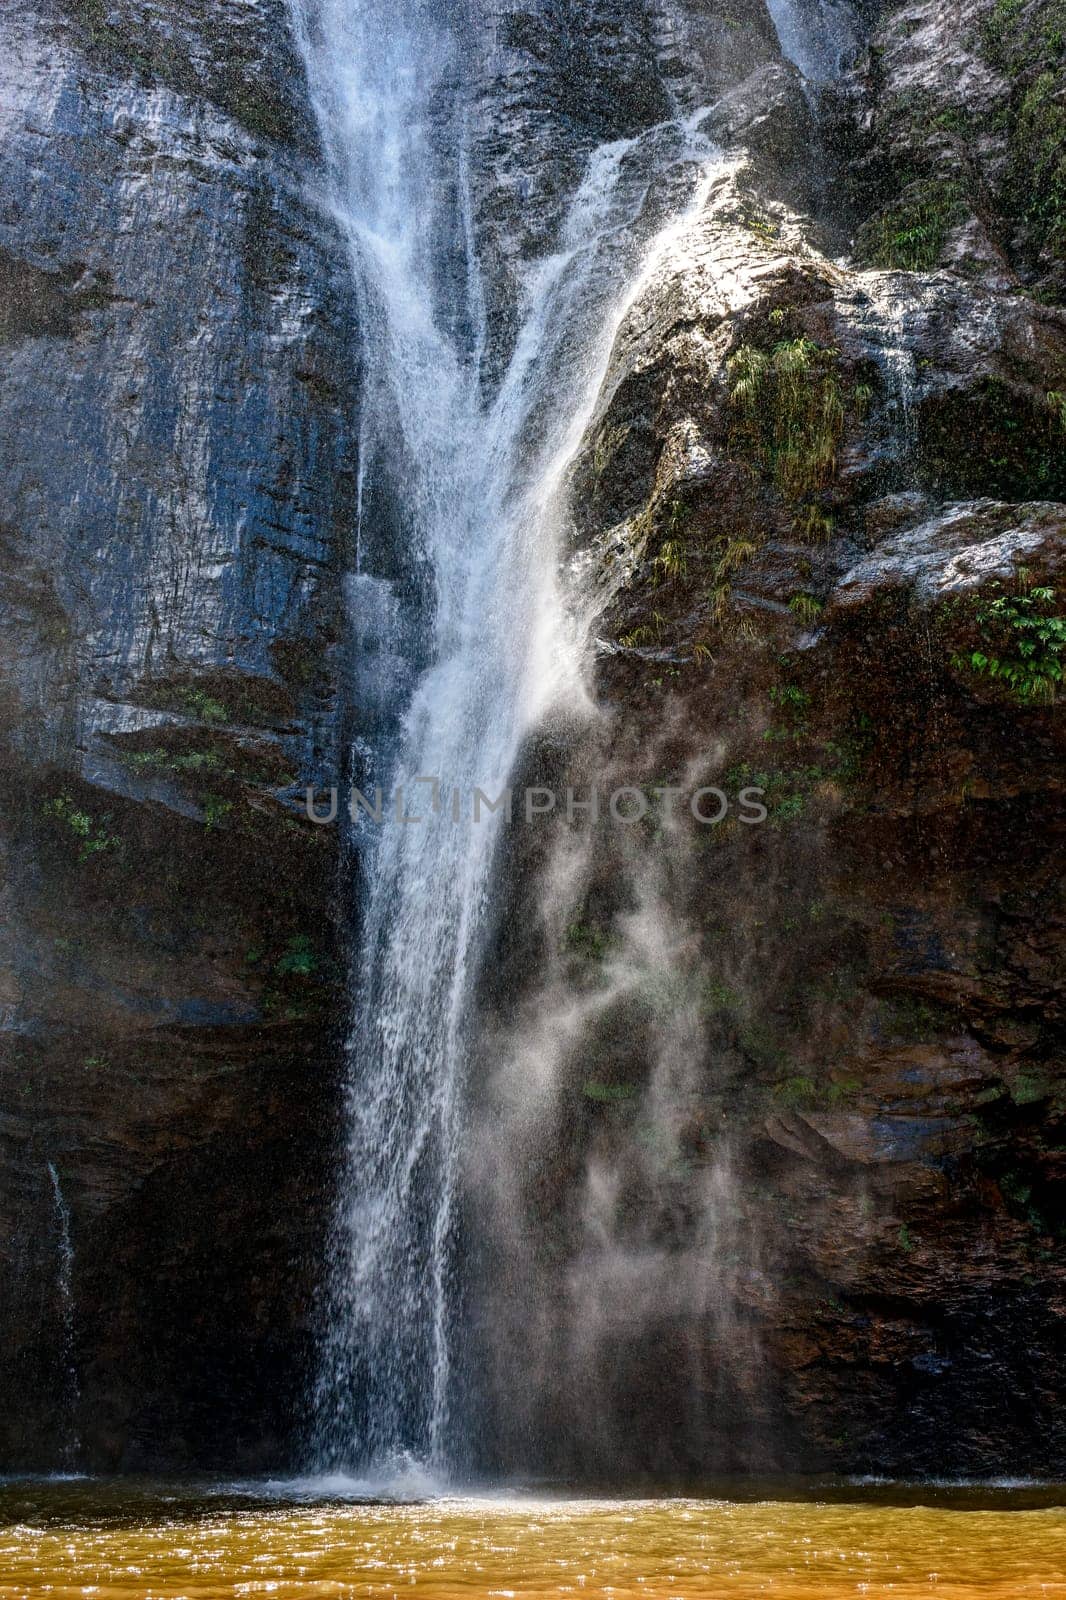 Waterfall water running down dark rocks by Fred_Pinheiro